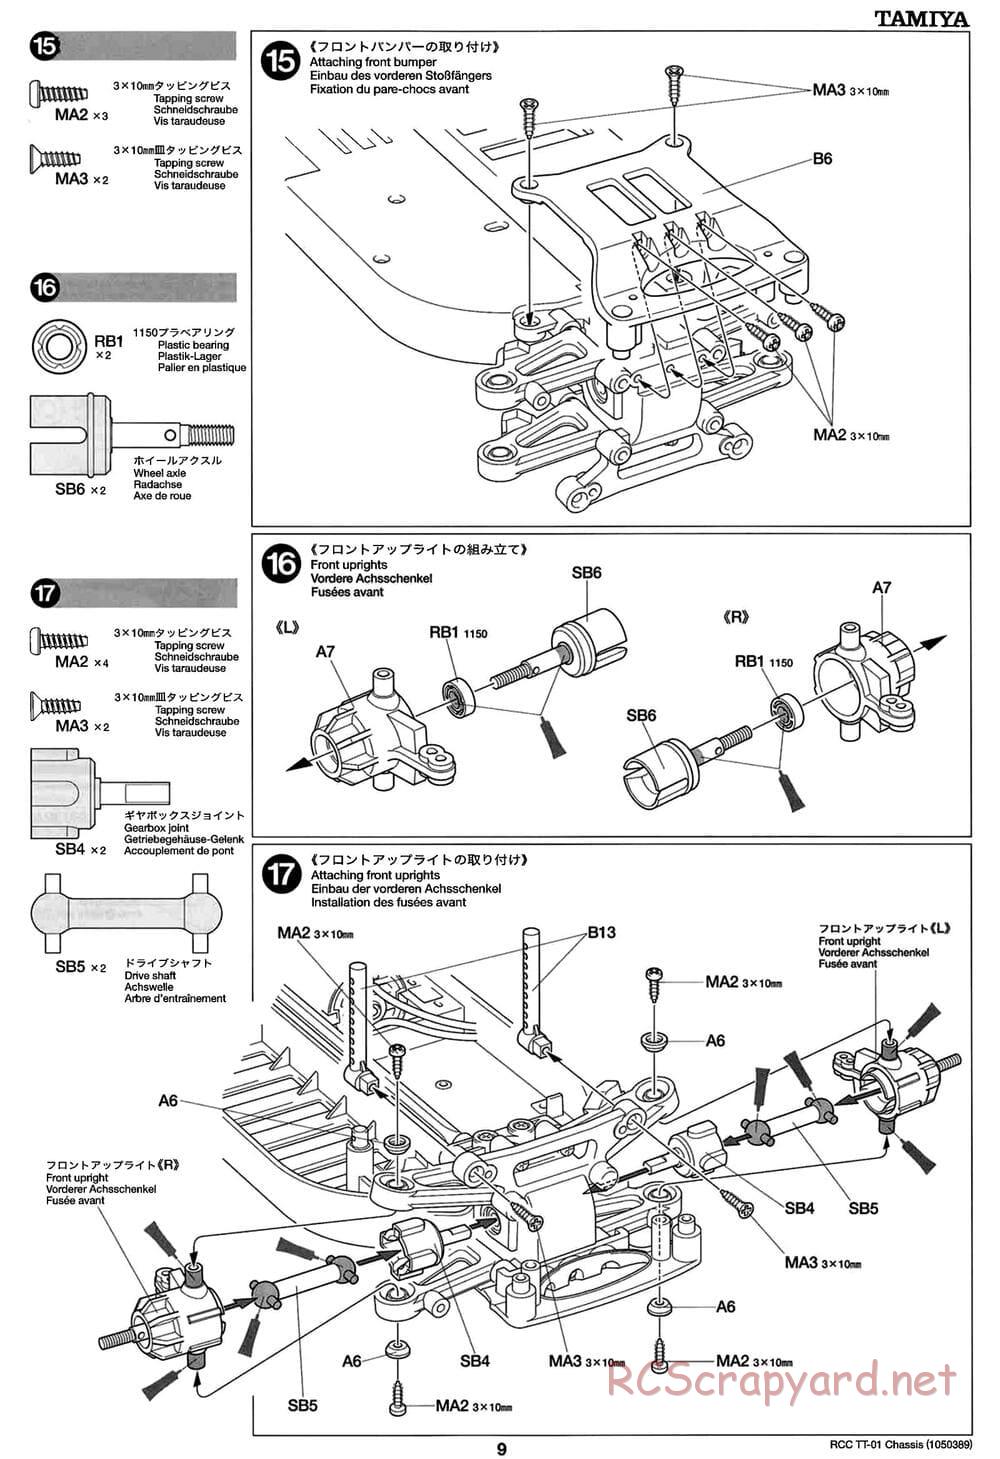 Tamiya - TT-01 Chassis - Manual - Page 9